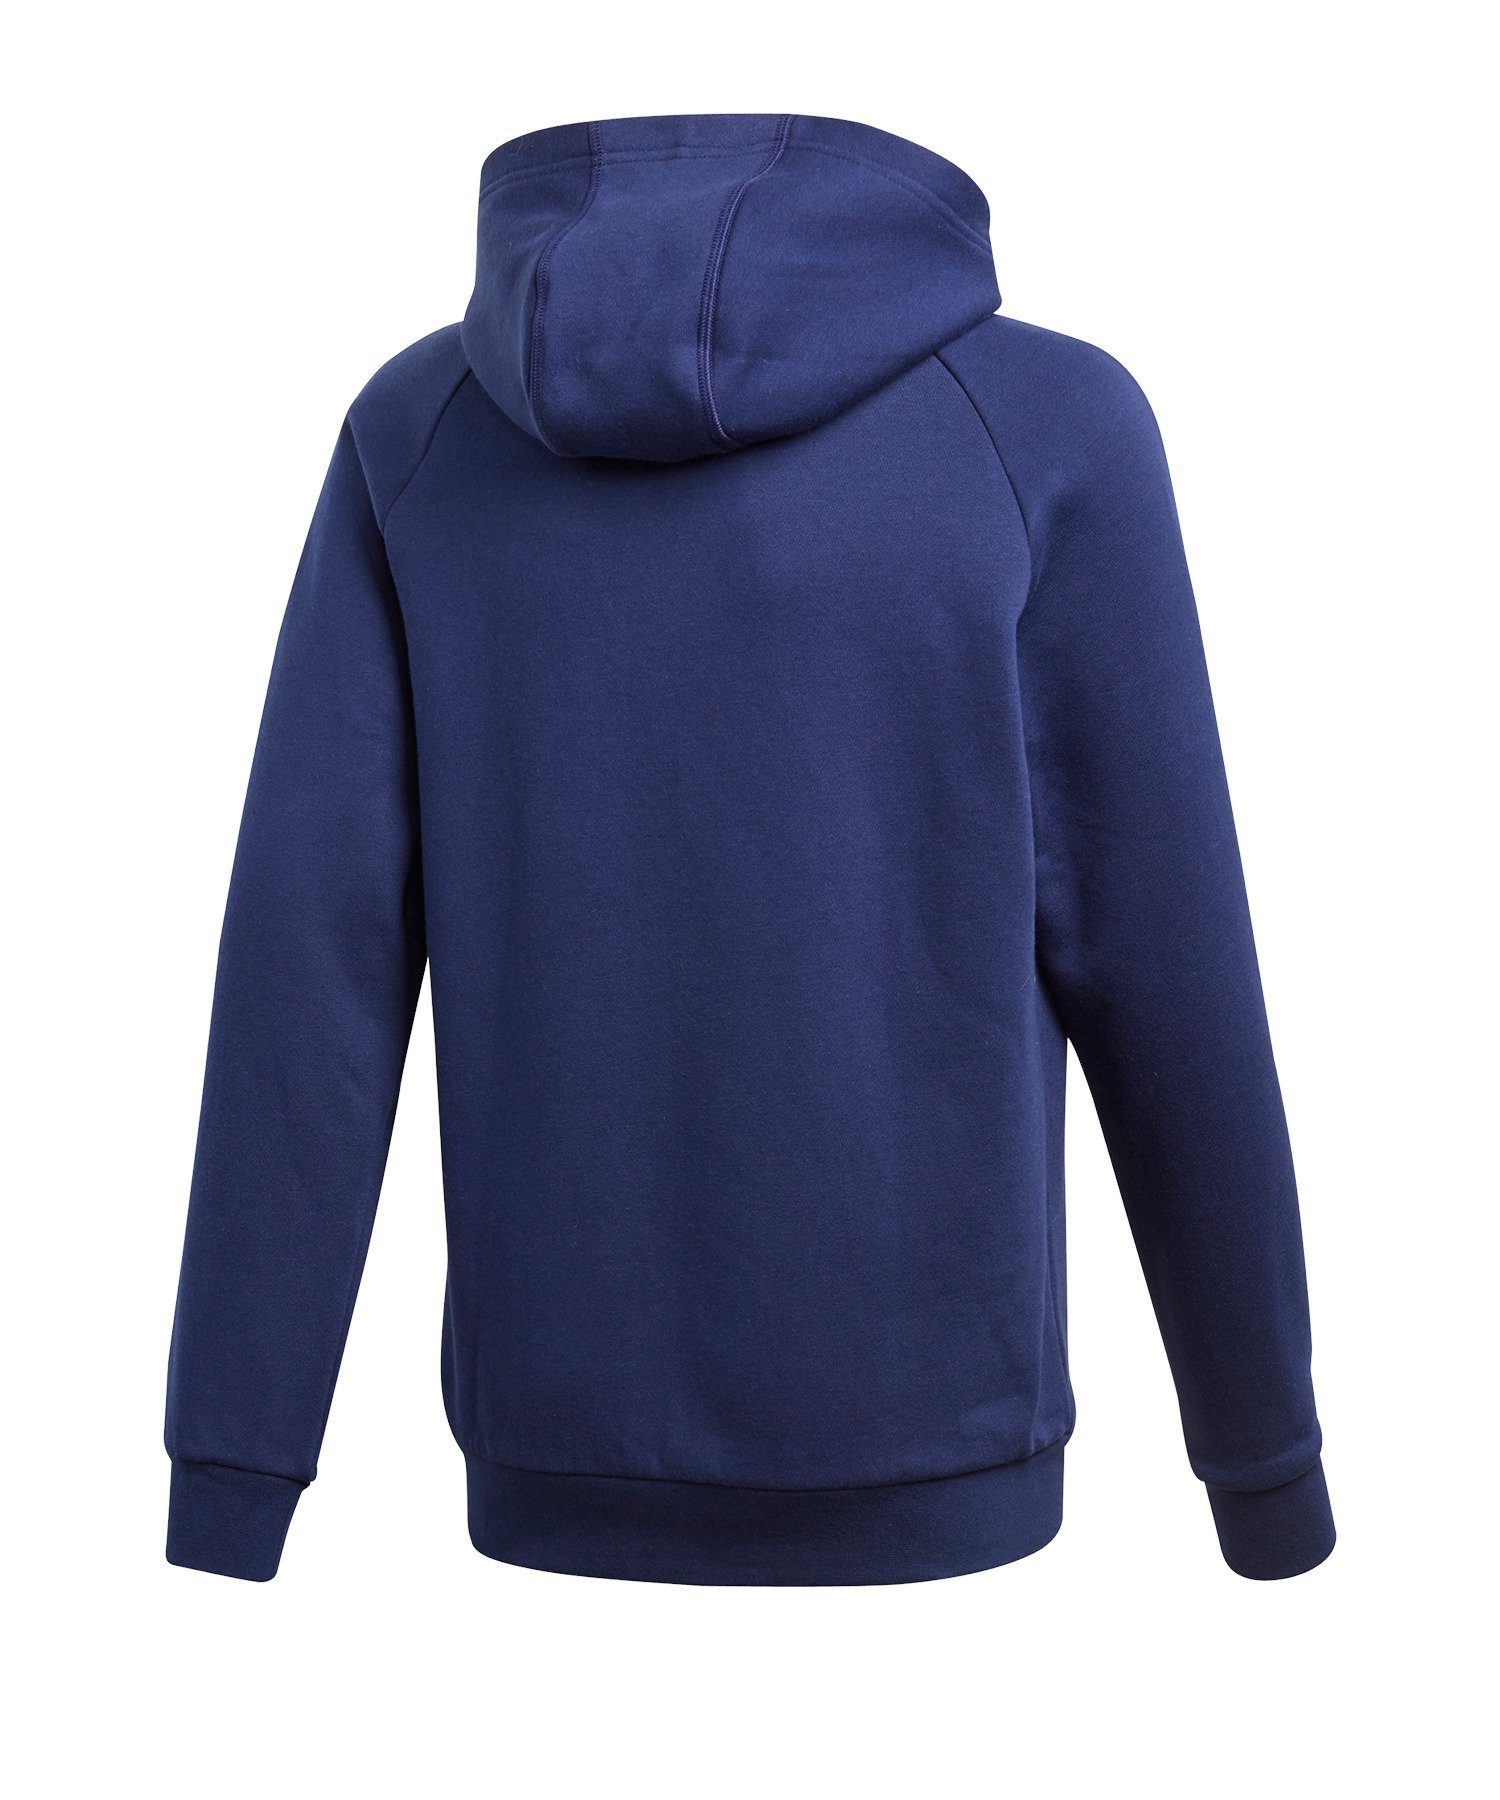 adidas Performance Sweatshirt Core 18 Hoody blauweiss Kapuzenswearshirt Kids